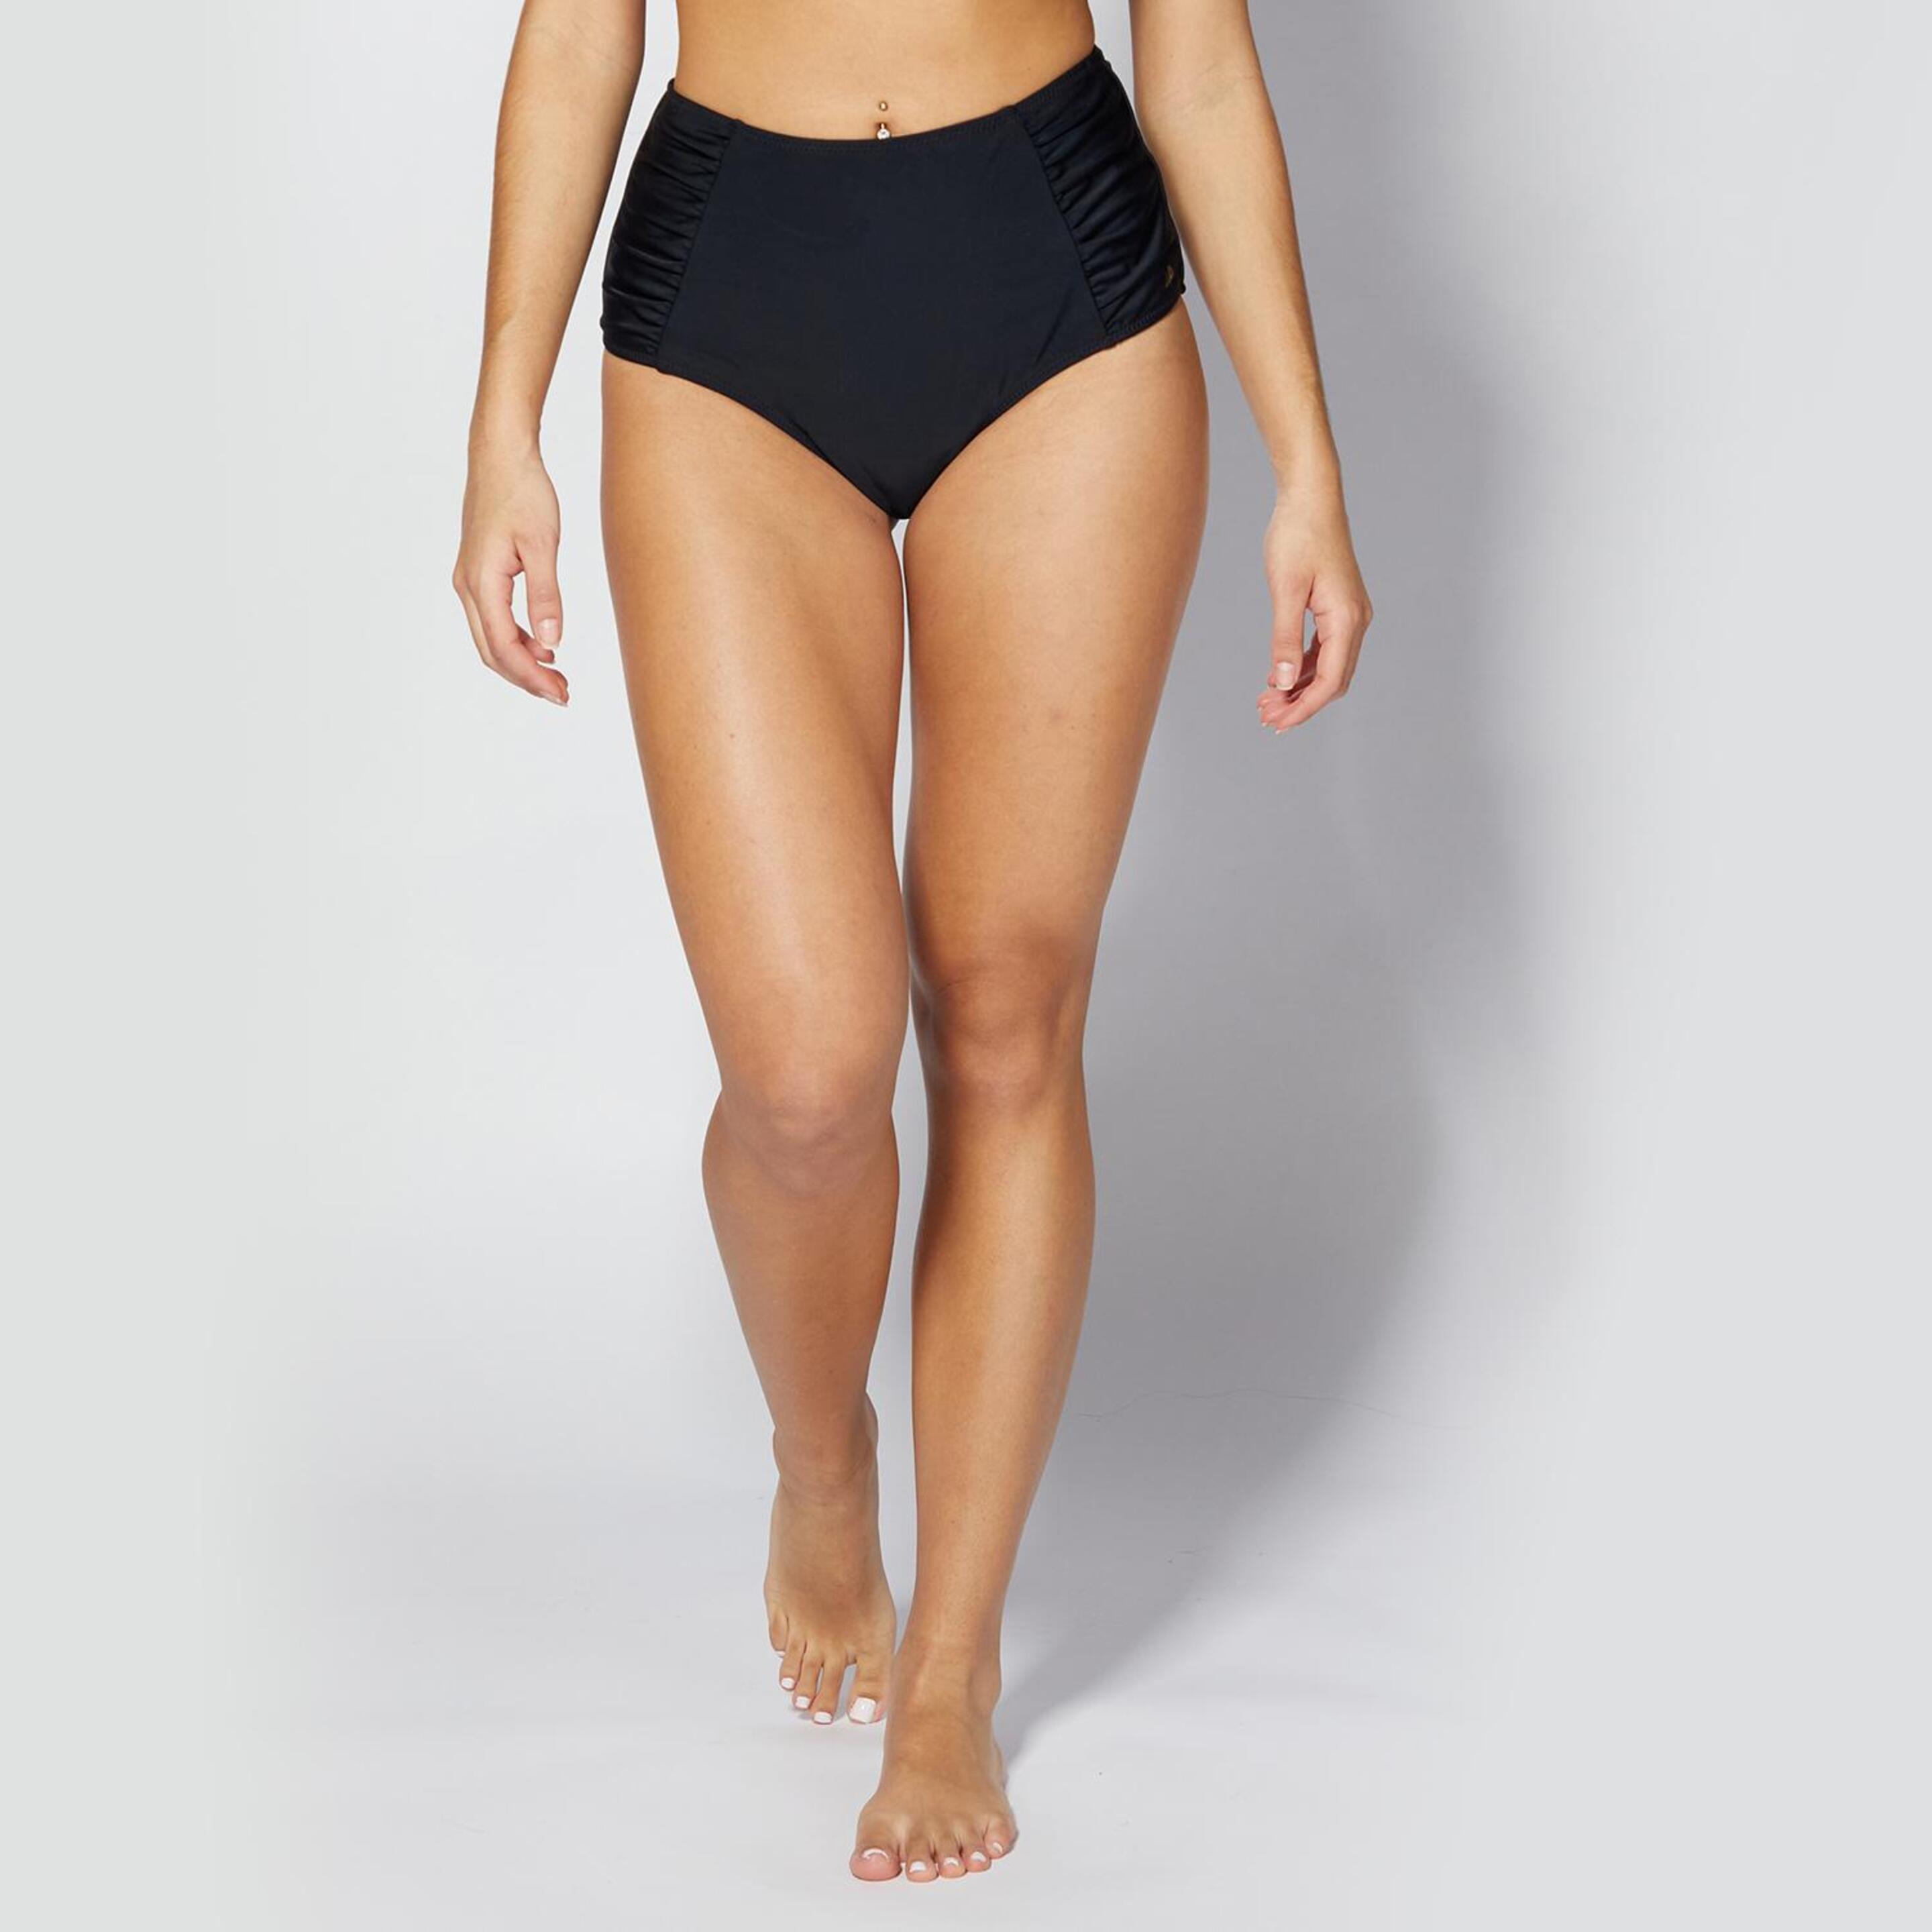 Braguita Bikini Up - negro - Braguita Alta Bikini Mujer